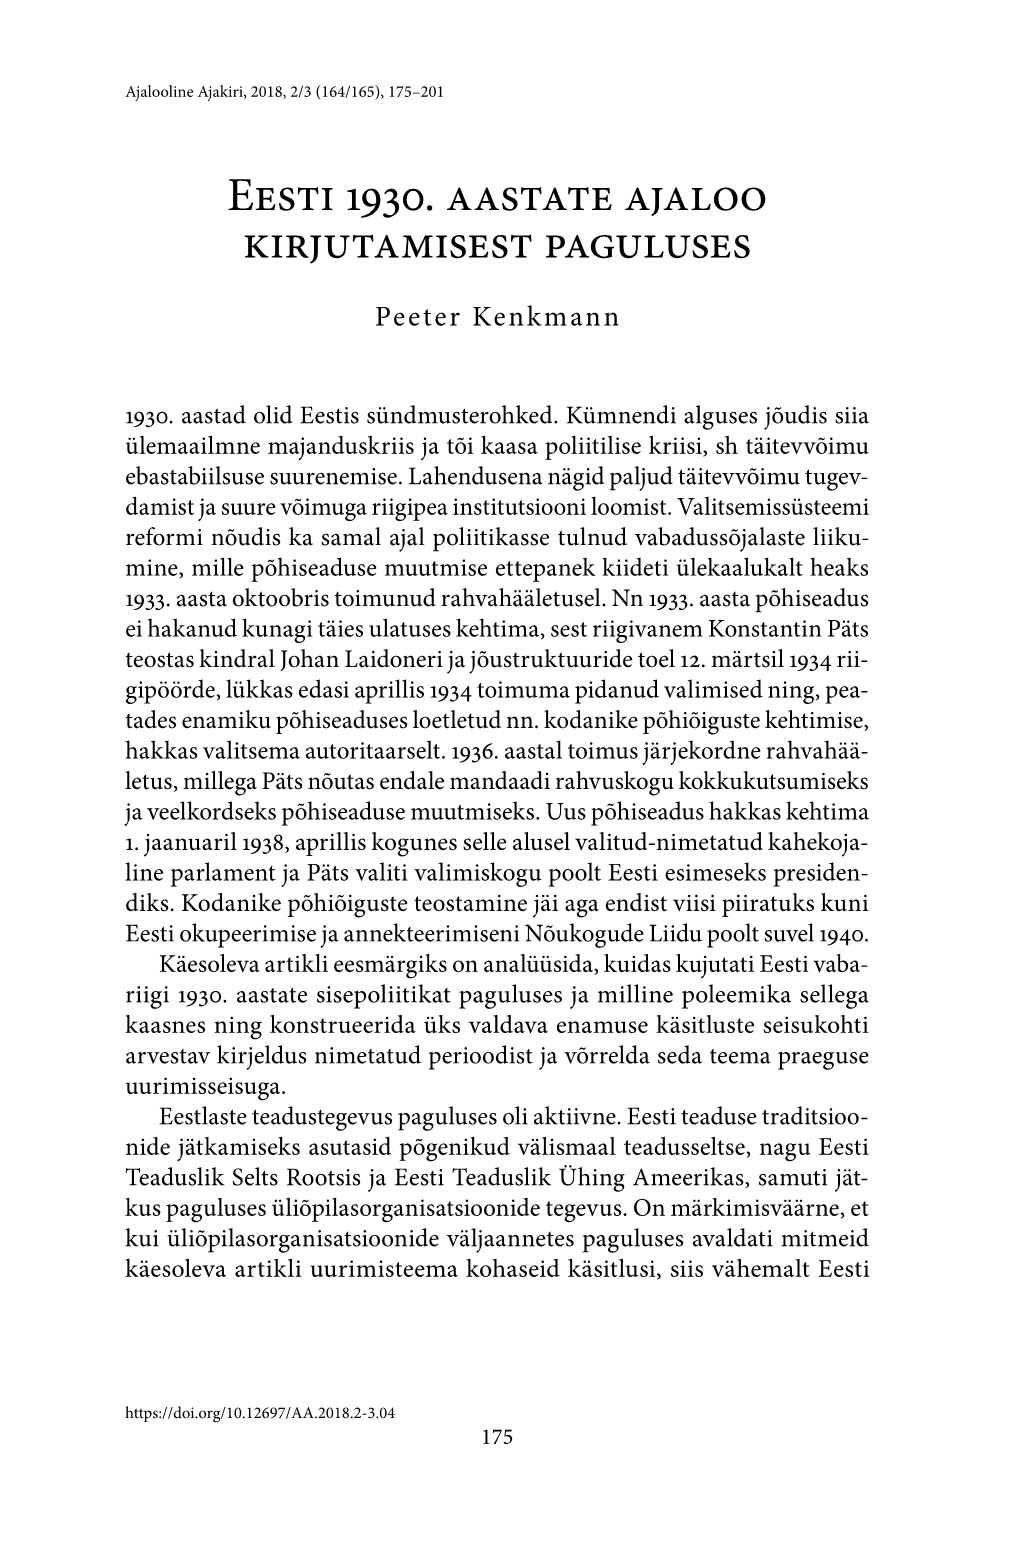 Eesti 1930. Aastate Ajaloo Kirjutamisest Paguluses